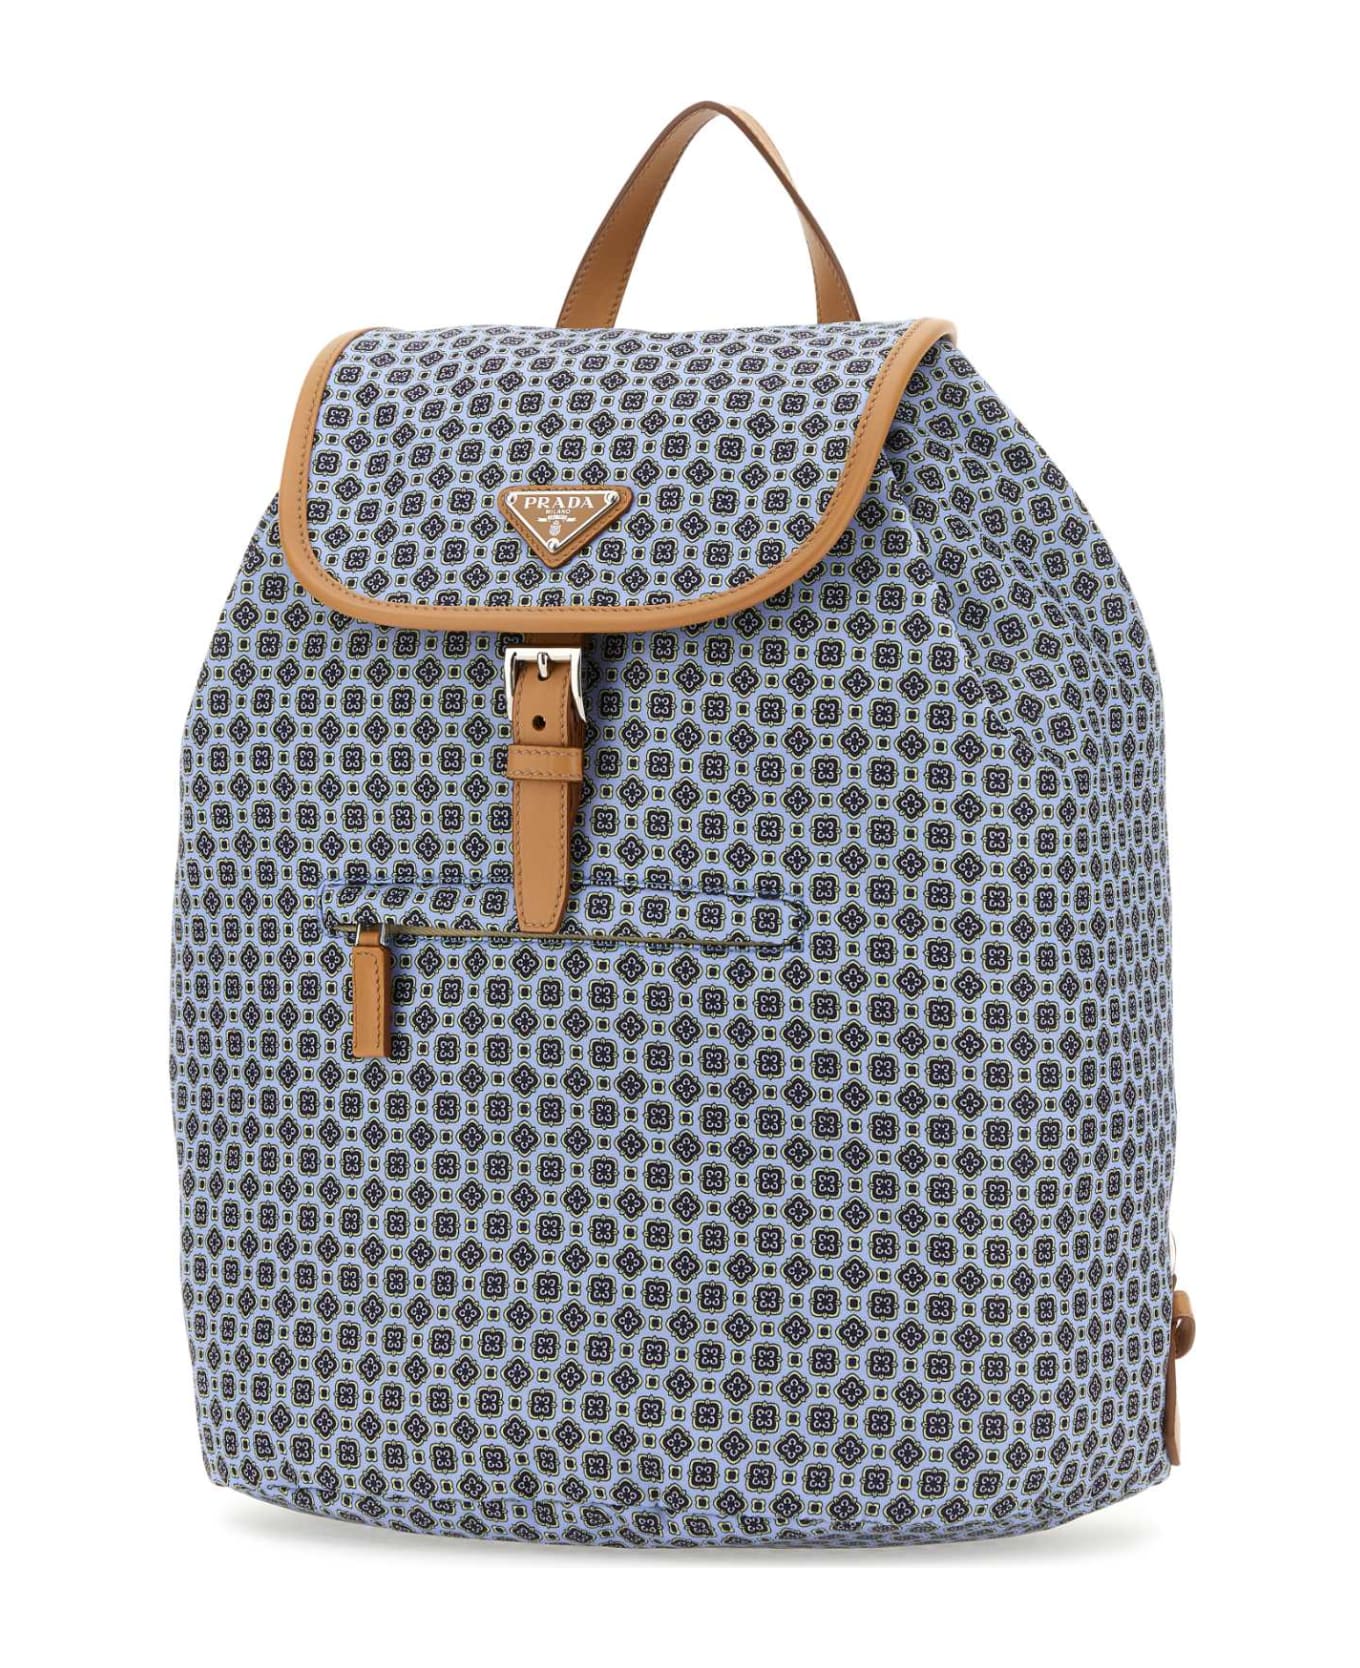 Prada Printed Re-nylon Backpack - ASTRALENATURAL